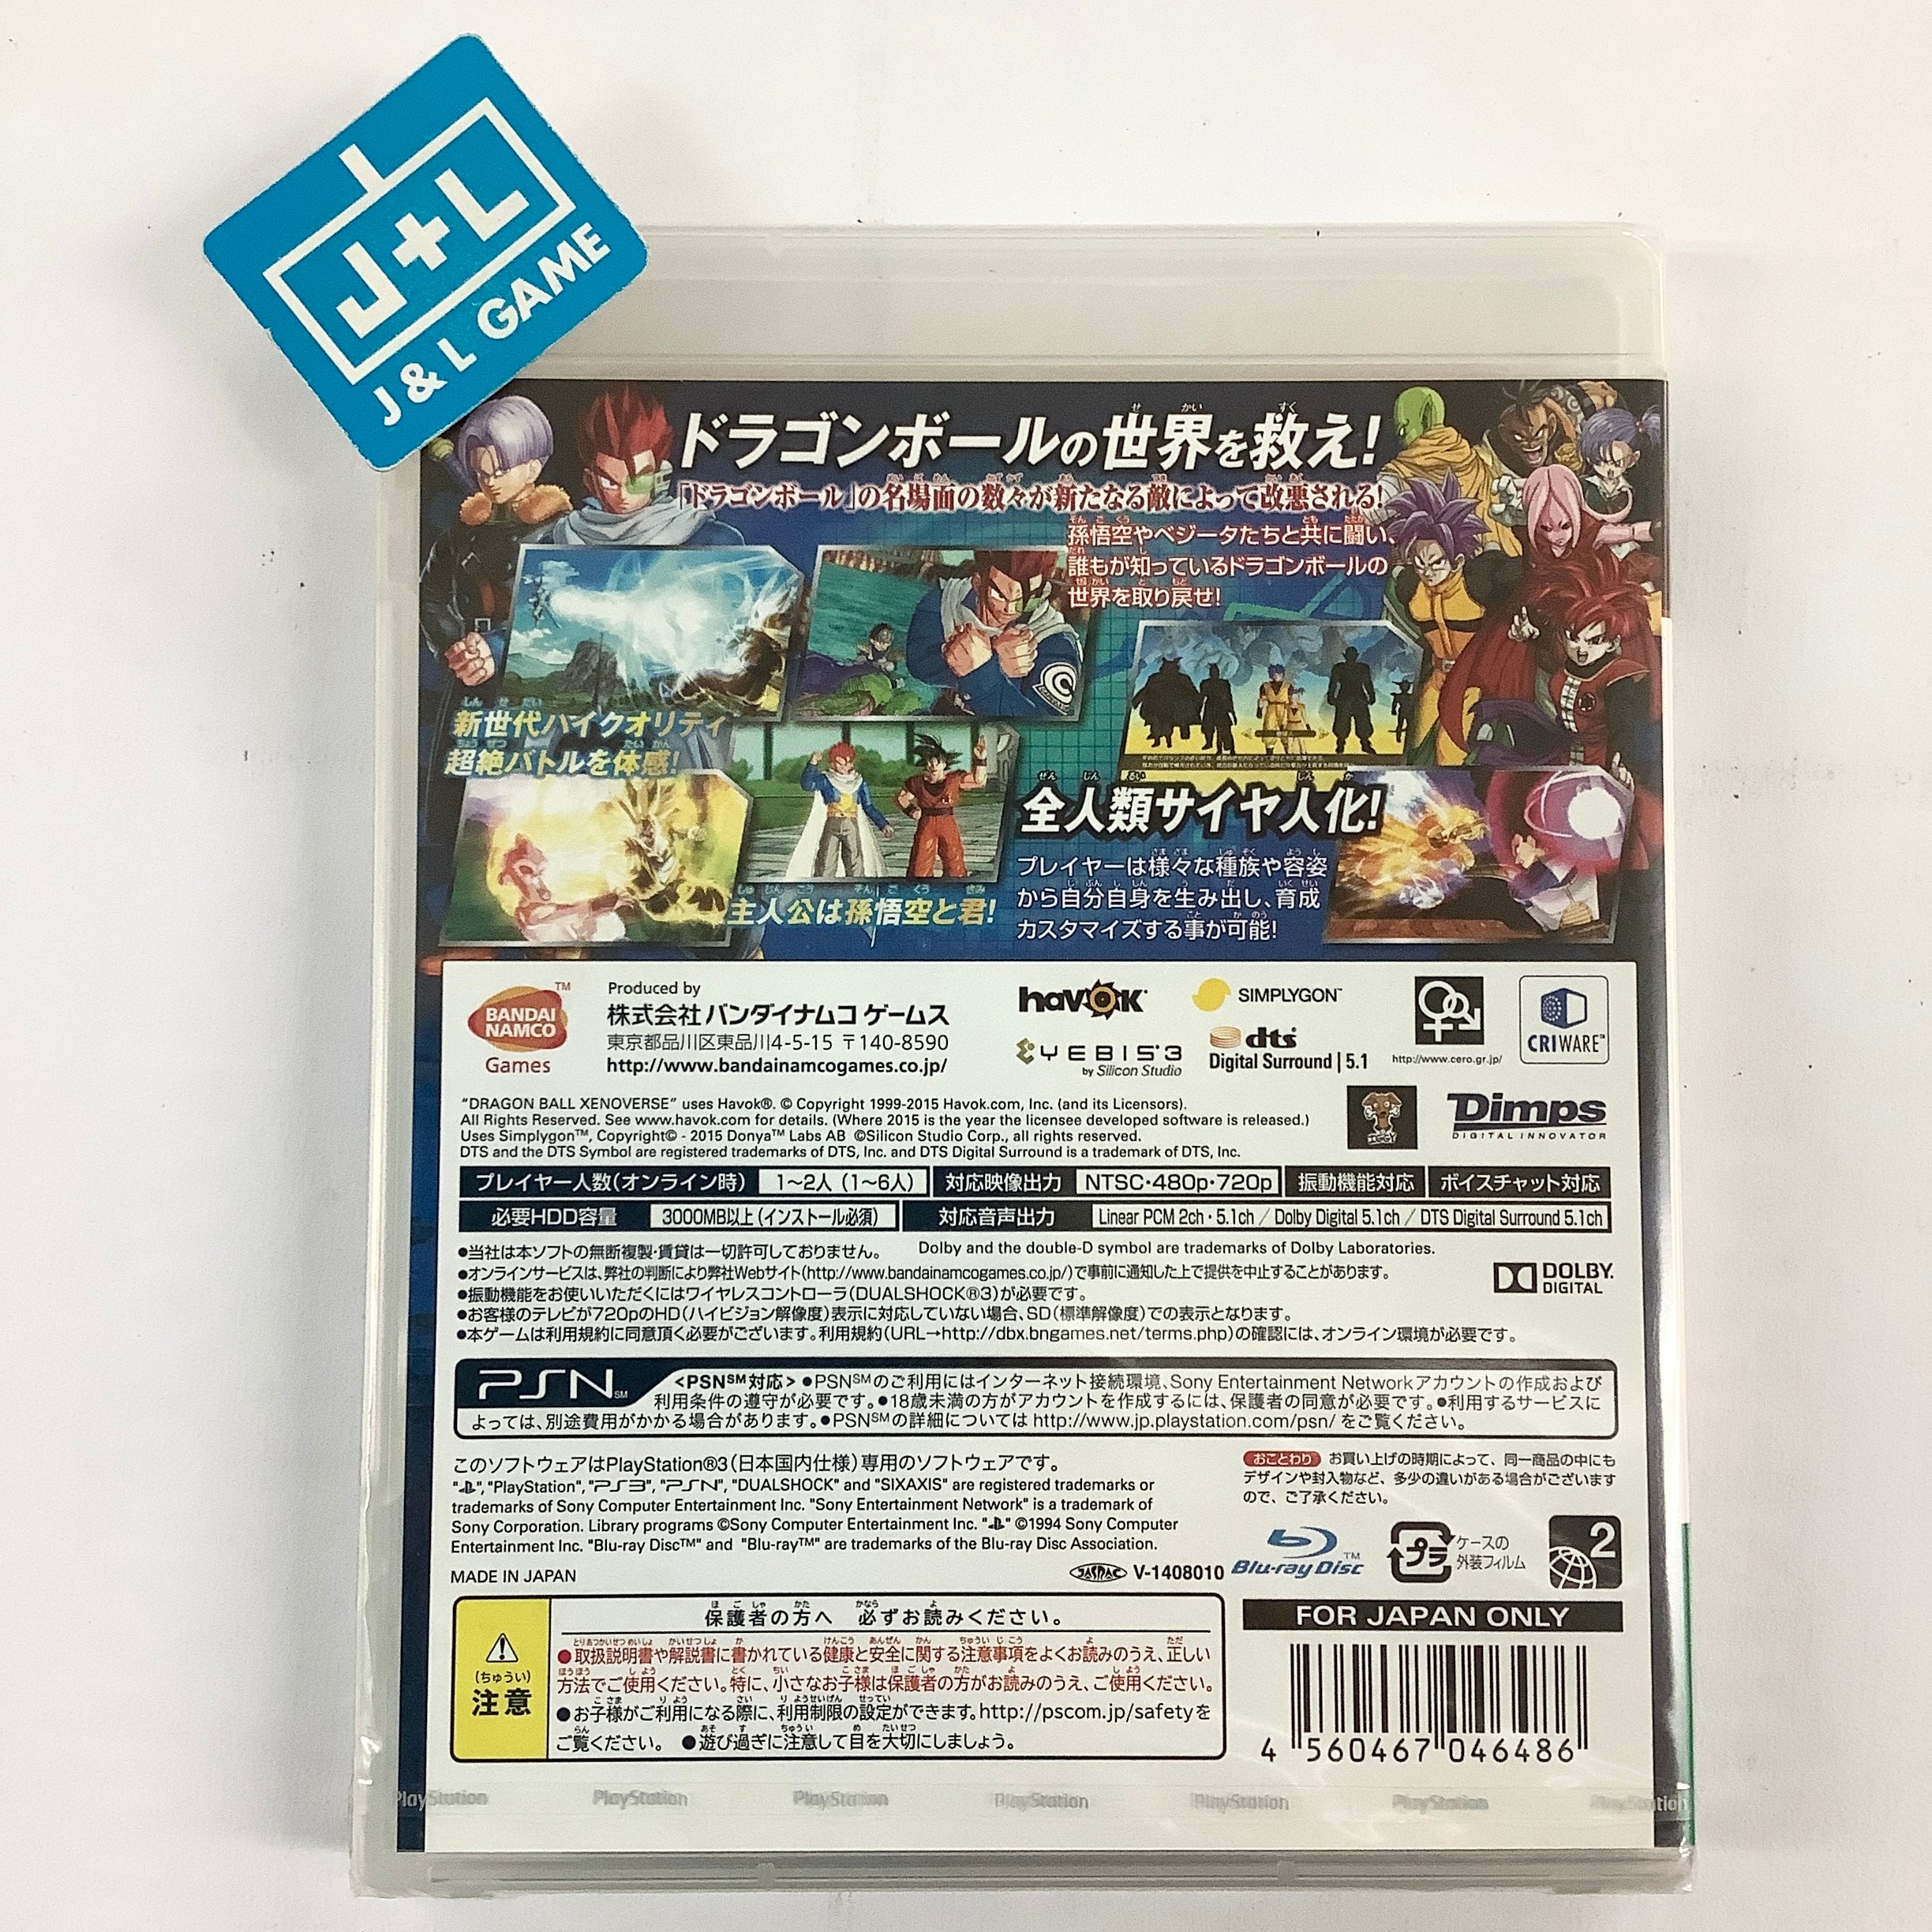 Dragon Ball: Xenoverse - (PS3) PlayStation 3 (Japanese Import) Video Games Bandai Namco Games   